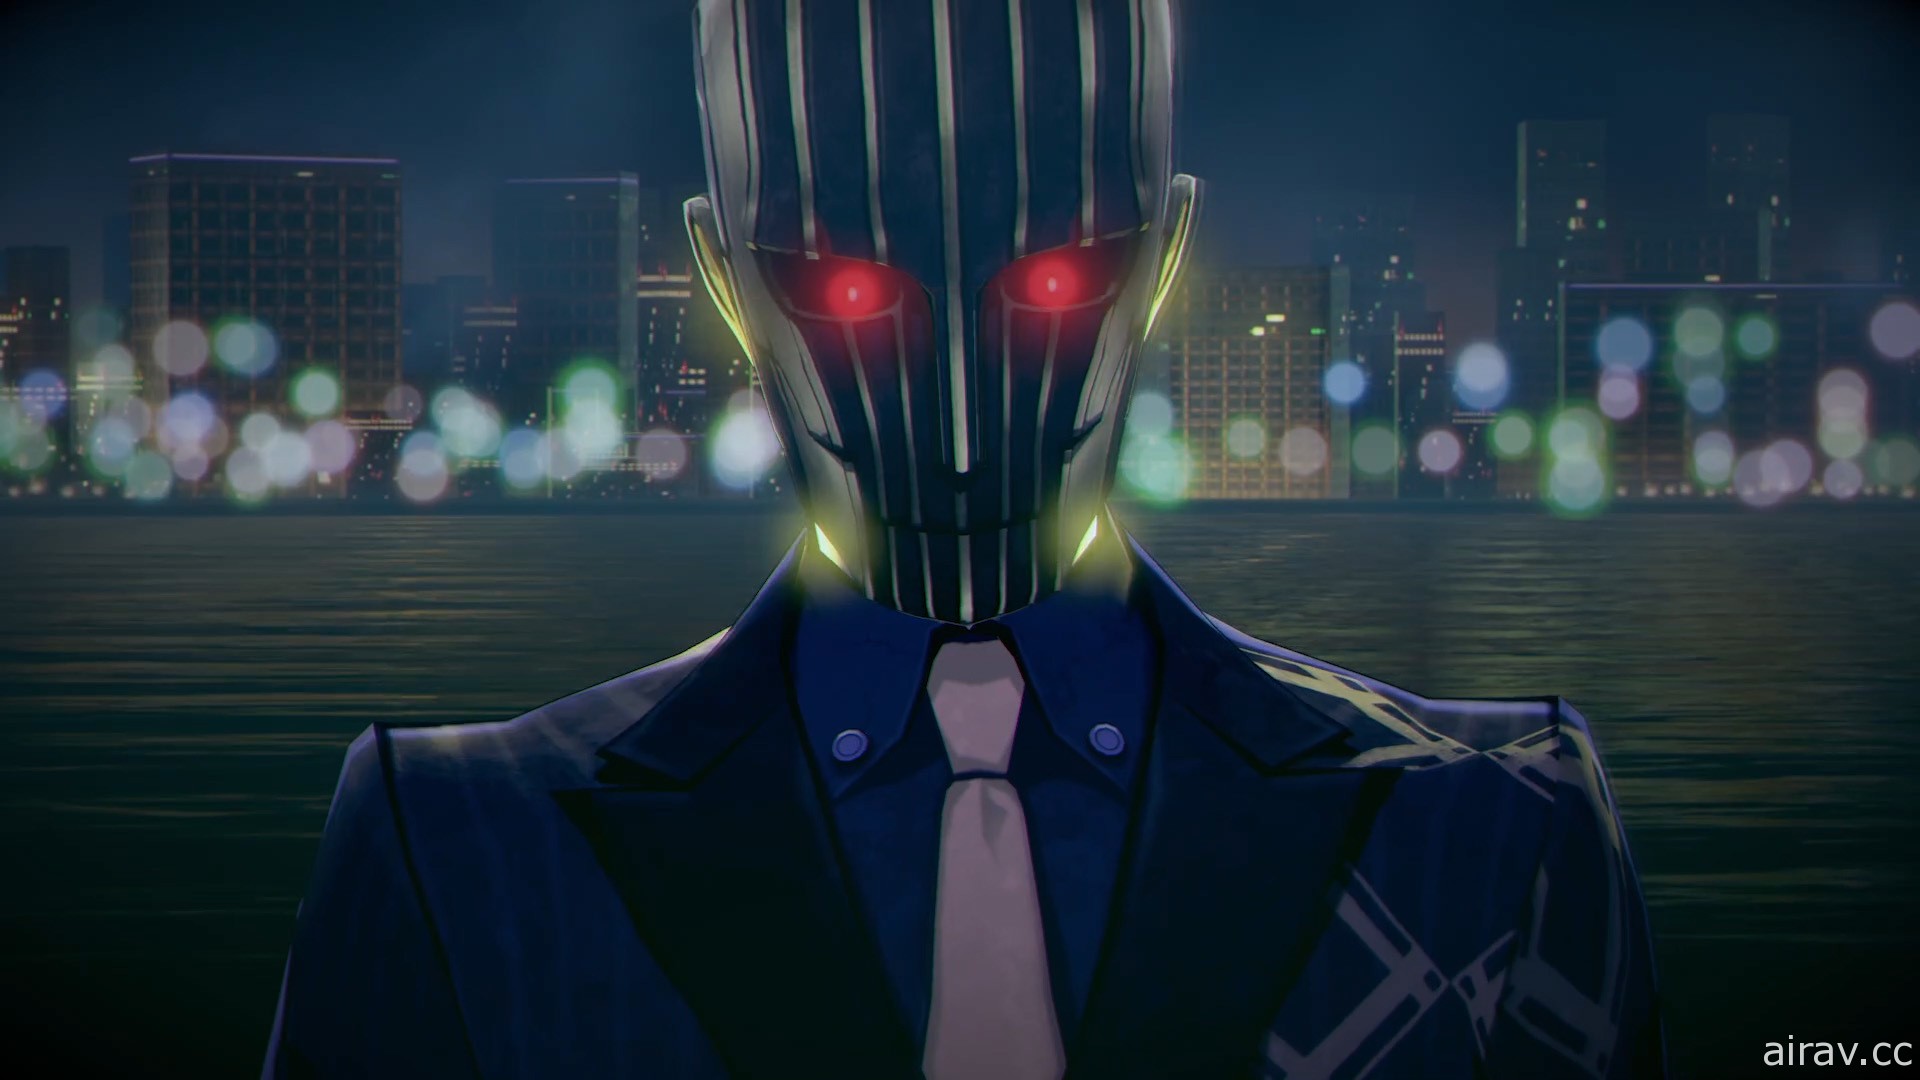 《靈魂駭客 2》揭曉後續 DLC 資訊 宣傳影片第 3 彈公開